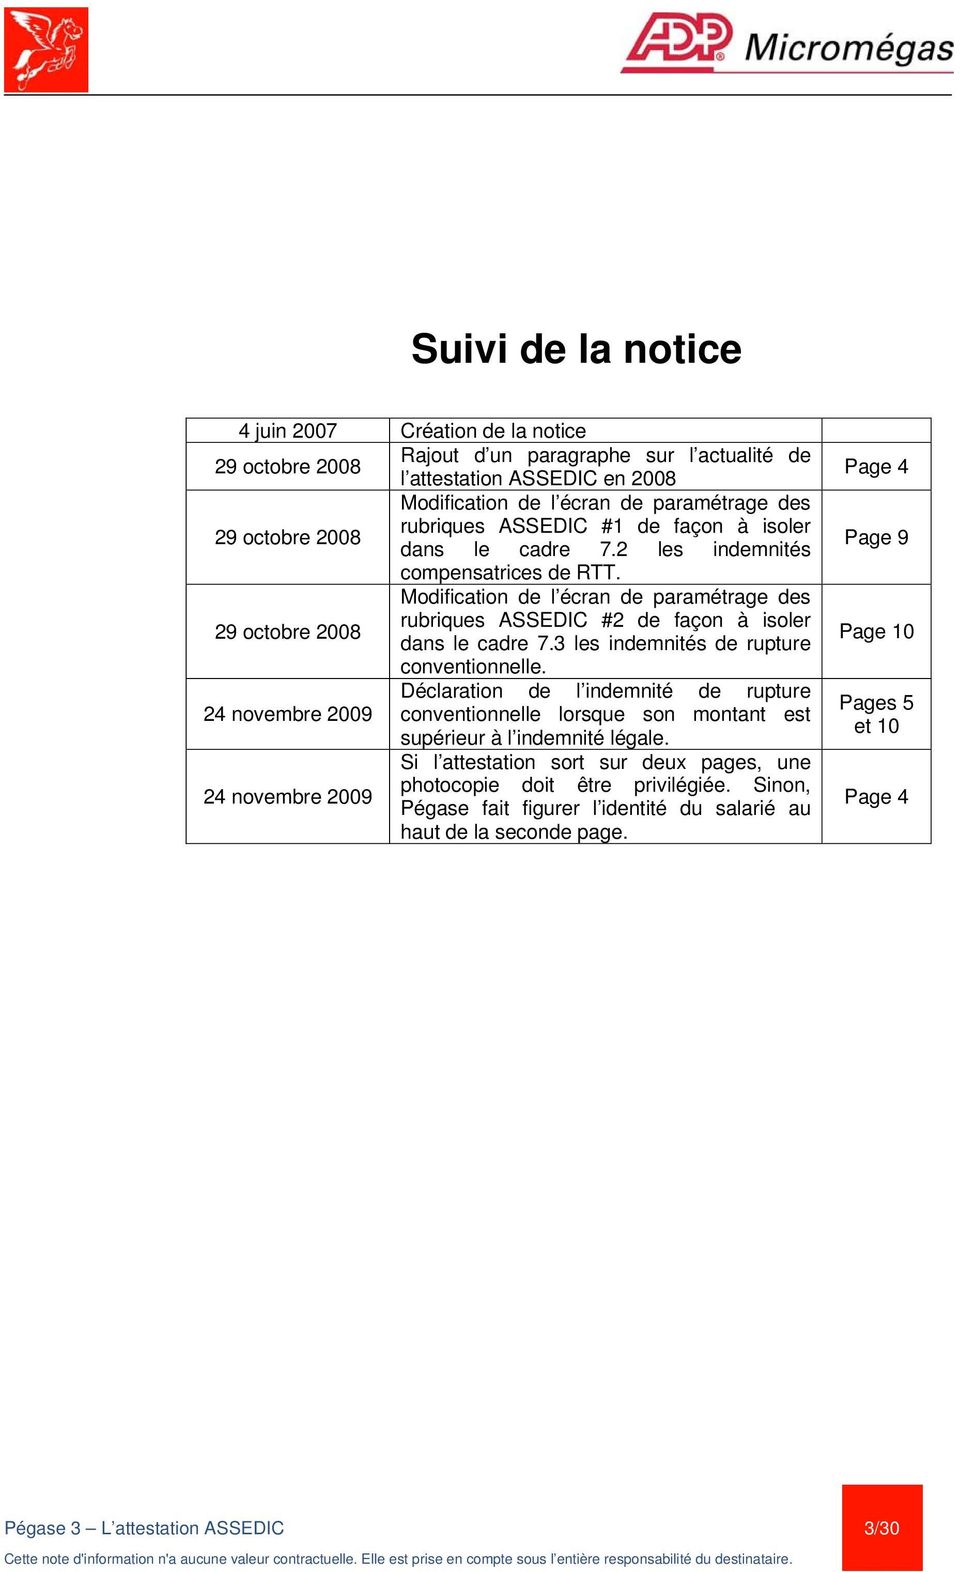 Modification de l écran de paramétrage des 29 octobre 2008 rubriques ASSEDIC #2 de façon à isoler dans le cadre 7.3 les indemnités de rupture conventionnelle.